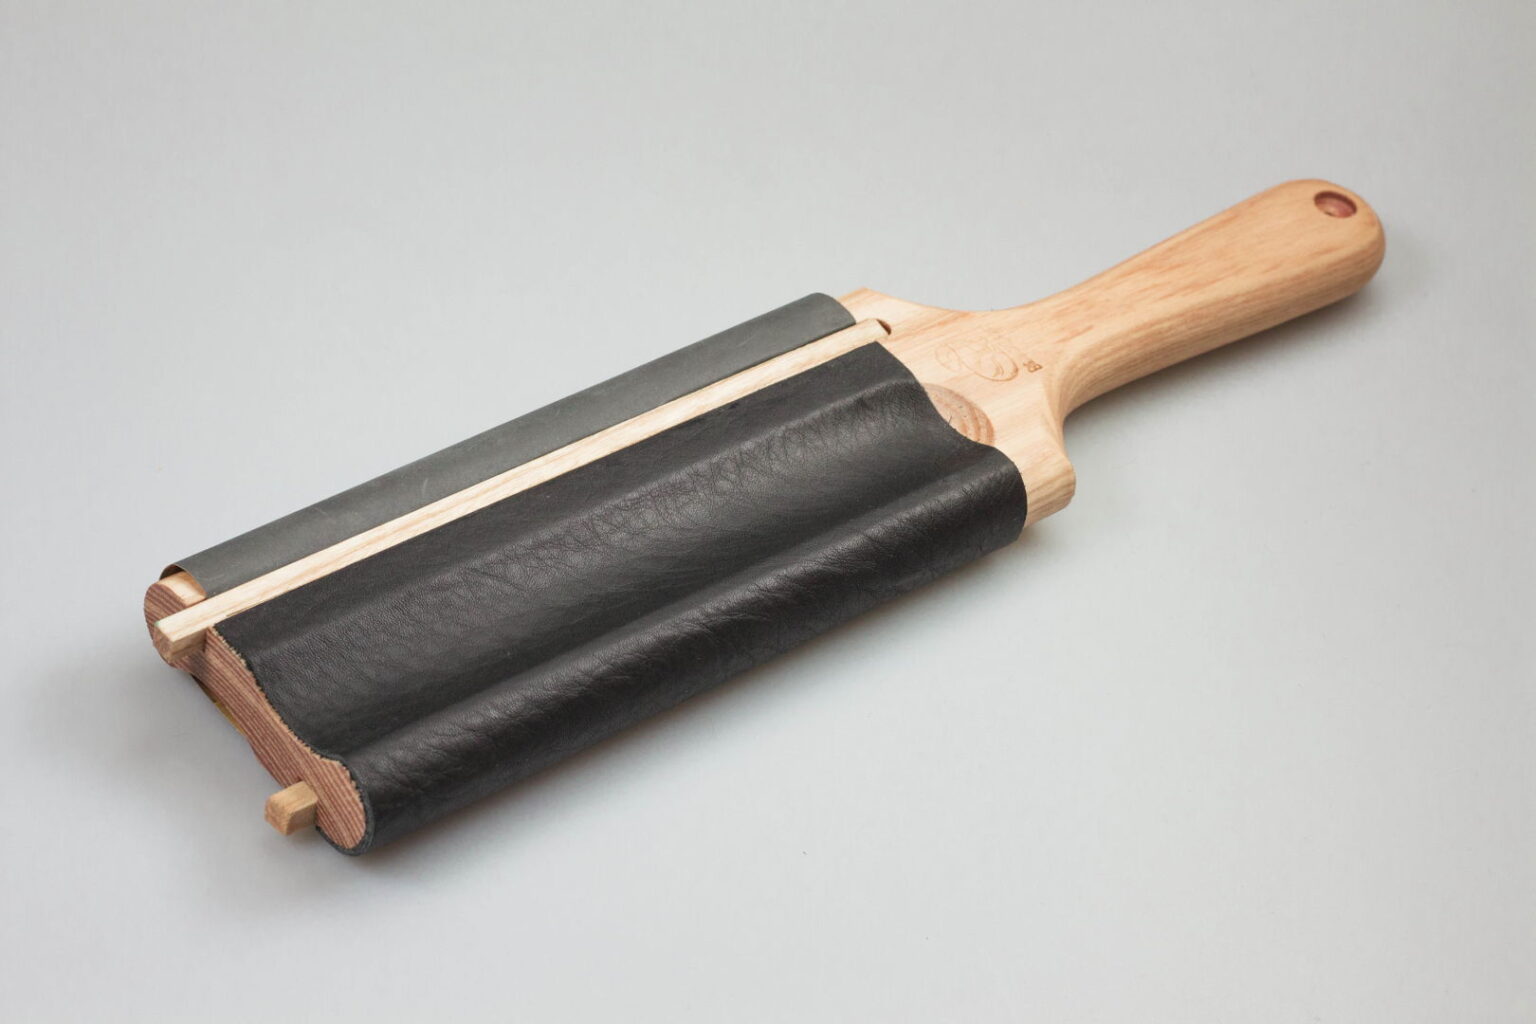 Beaver Craft ножи для резьбы по дереву. Досточки для набивания Канта на кровати. Beaver Craft. Product ls